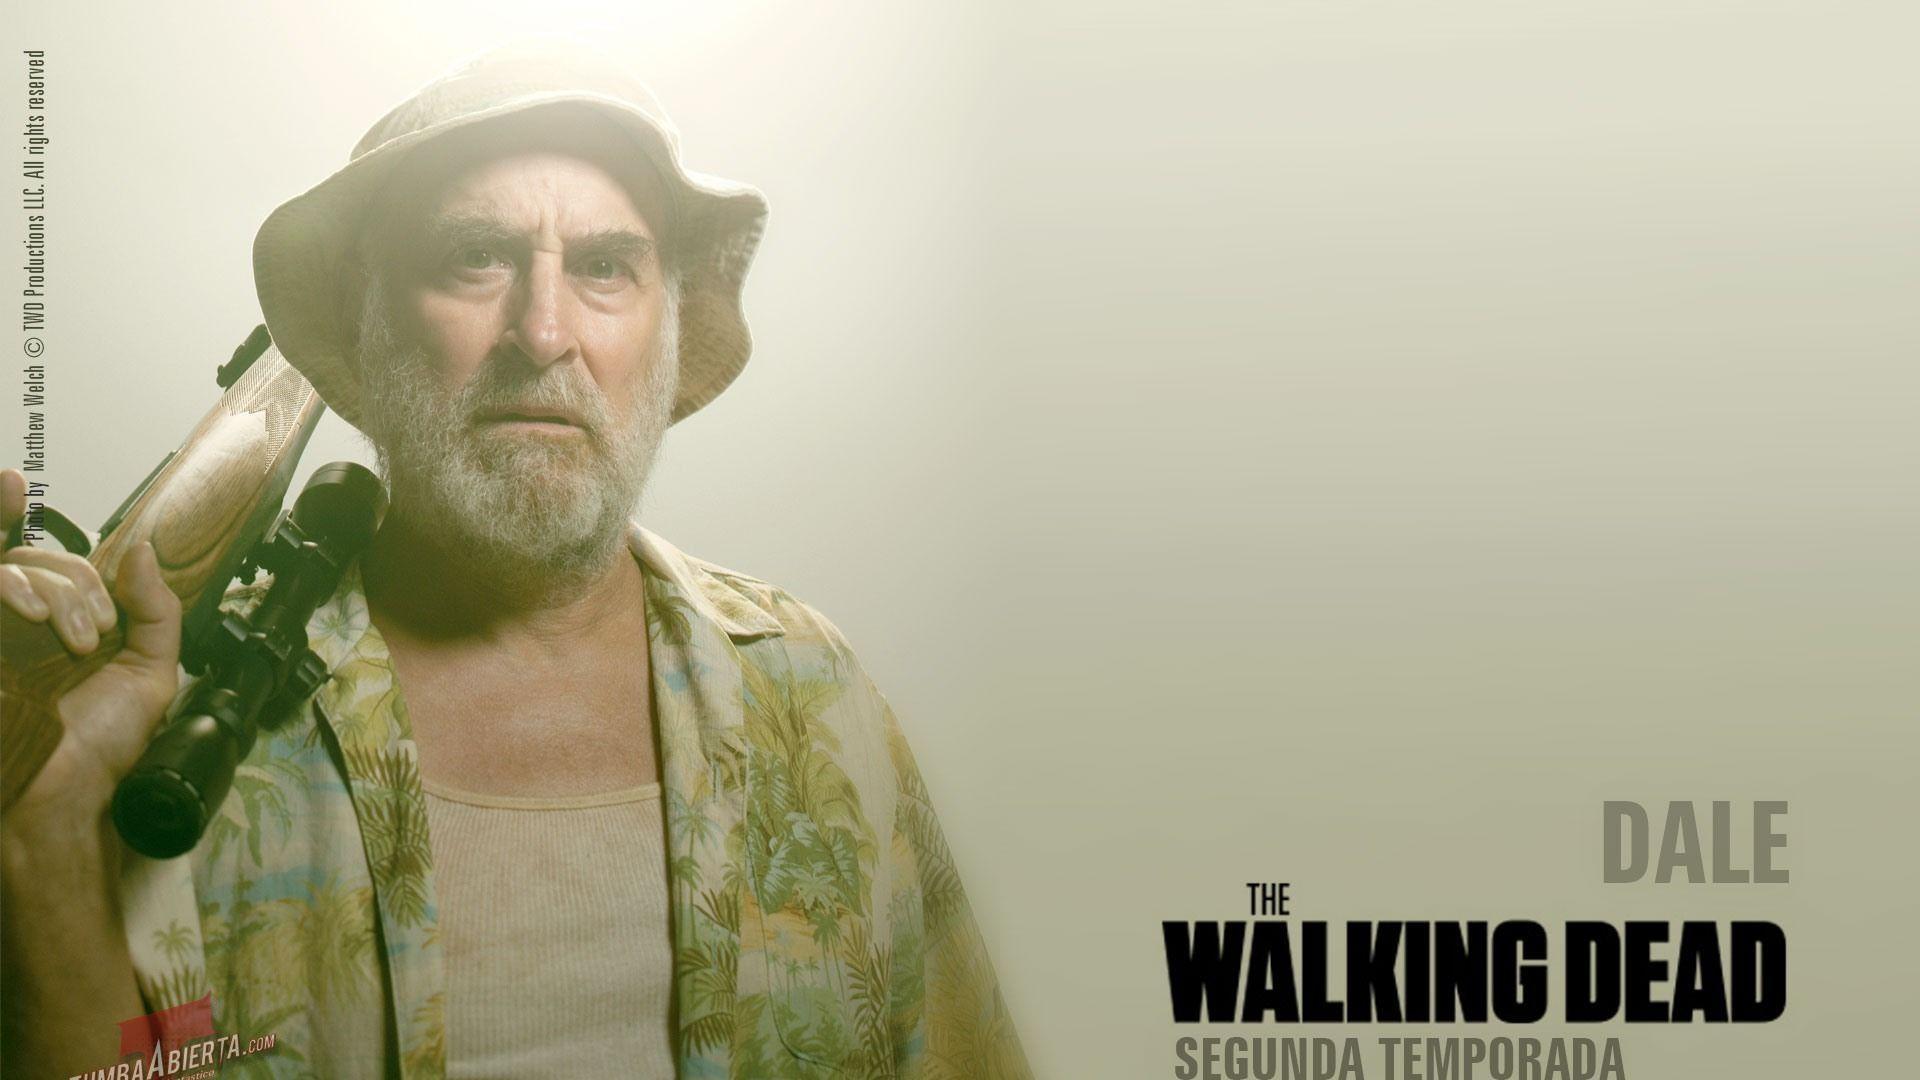 DALE The Walking Dead American TV Series Wallpaper